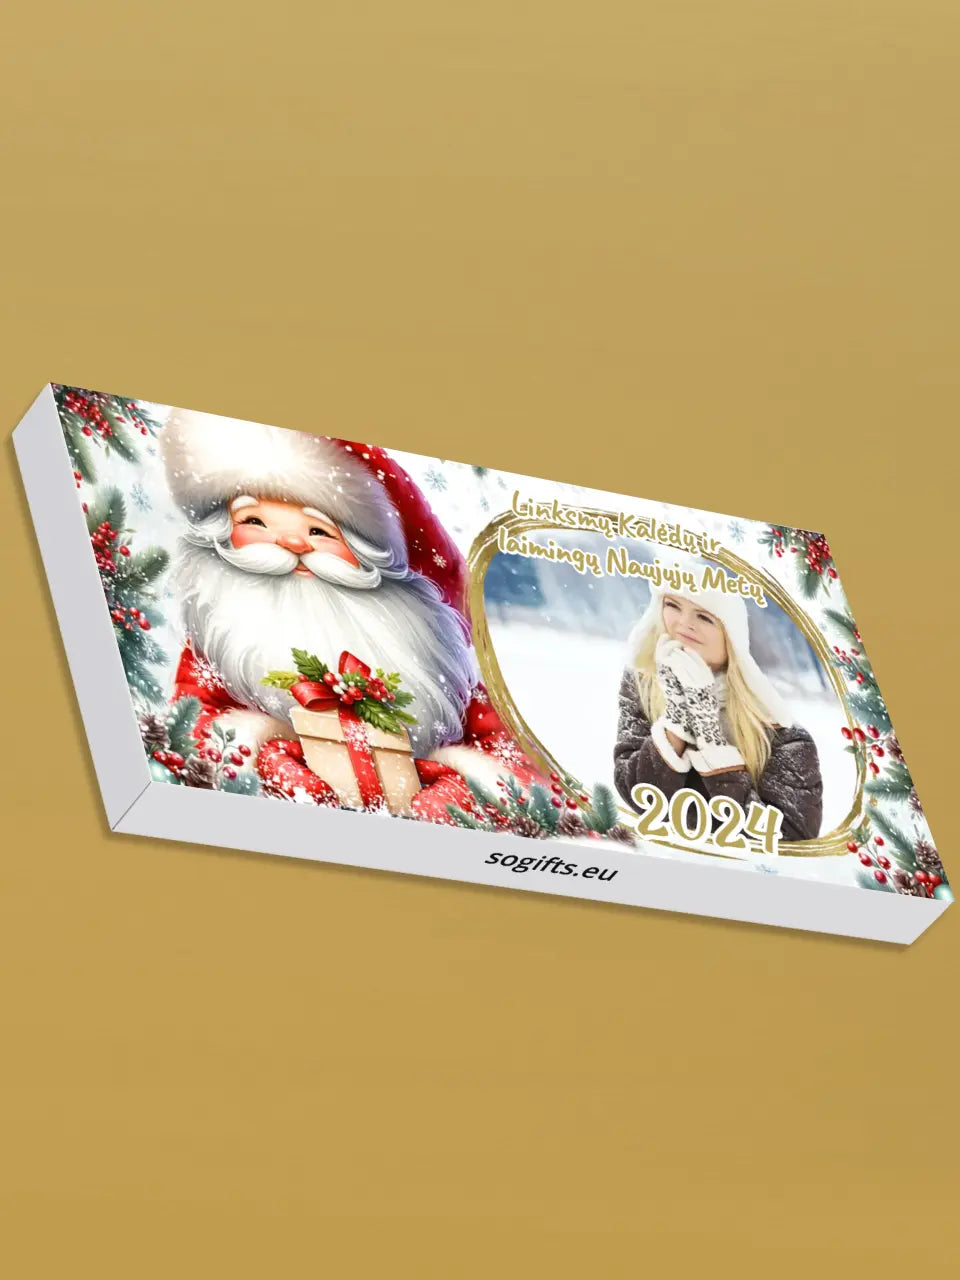 Personalizuotas "Kalėdinis dizainas 12“ šokoladas su jūsų nuotrauka